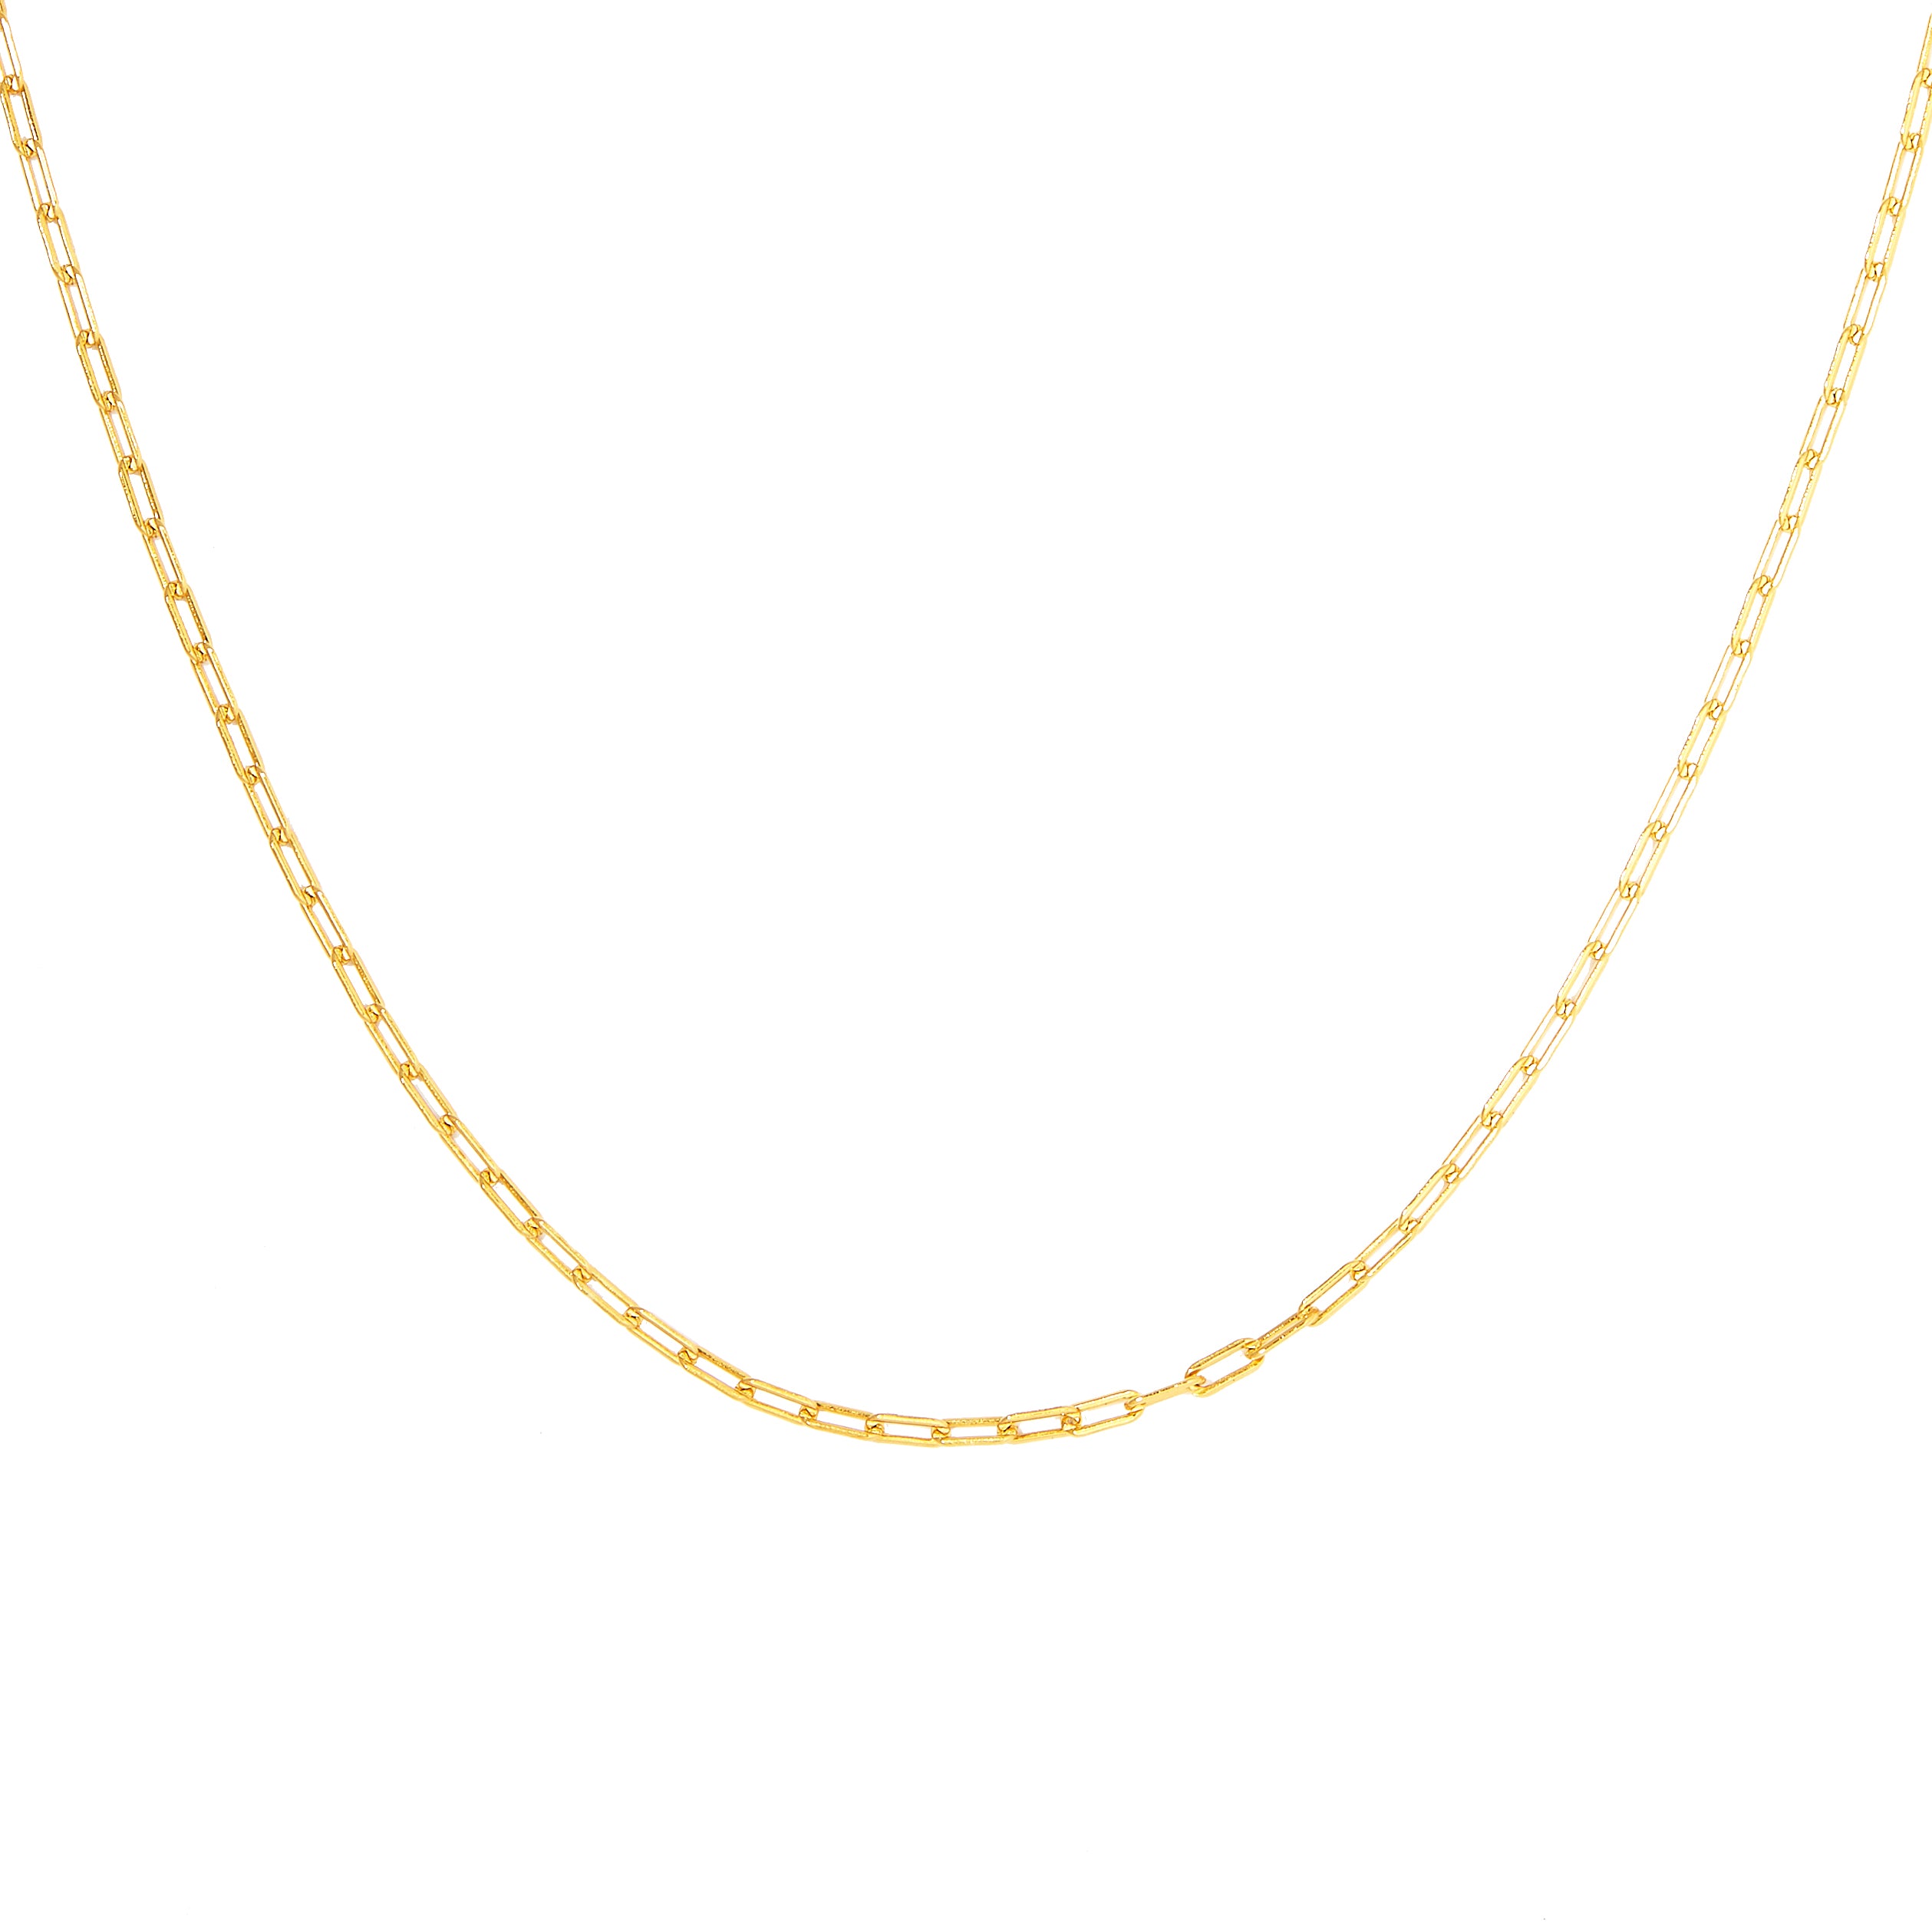 Chain Link Necklace | Silver Link Necklace | La Maya